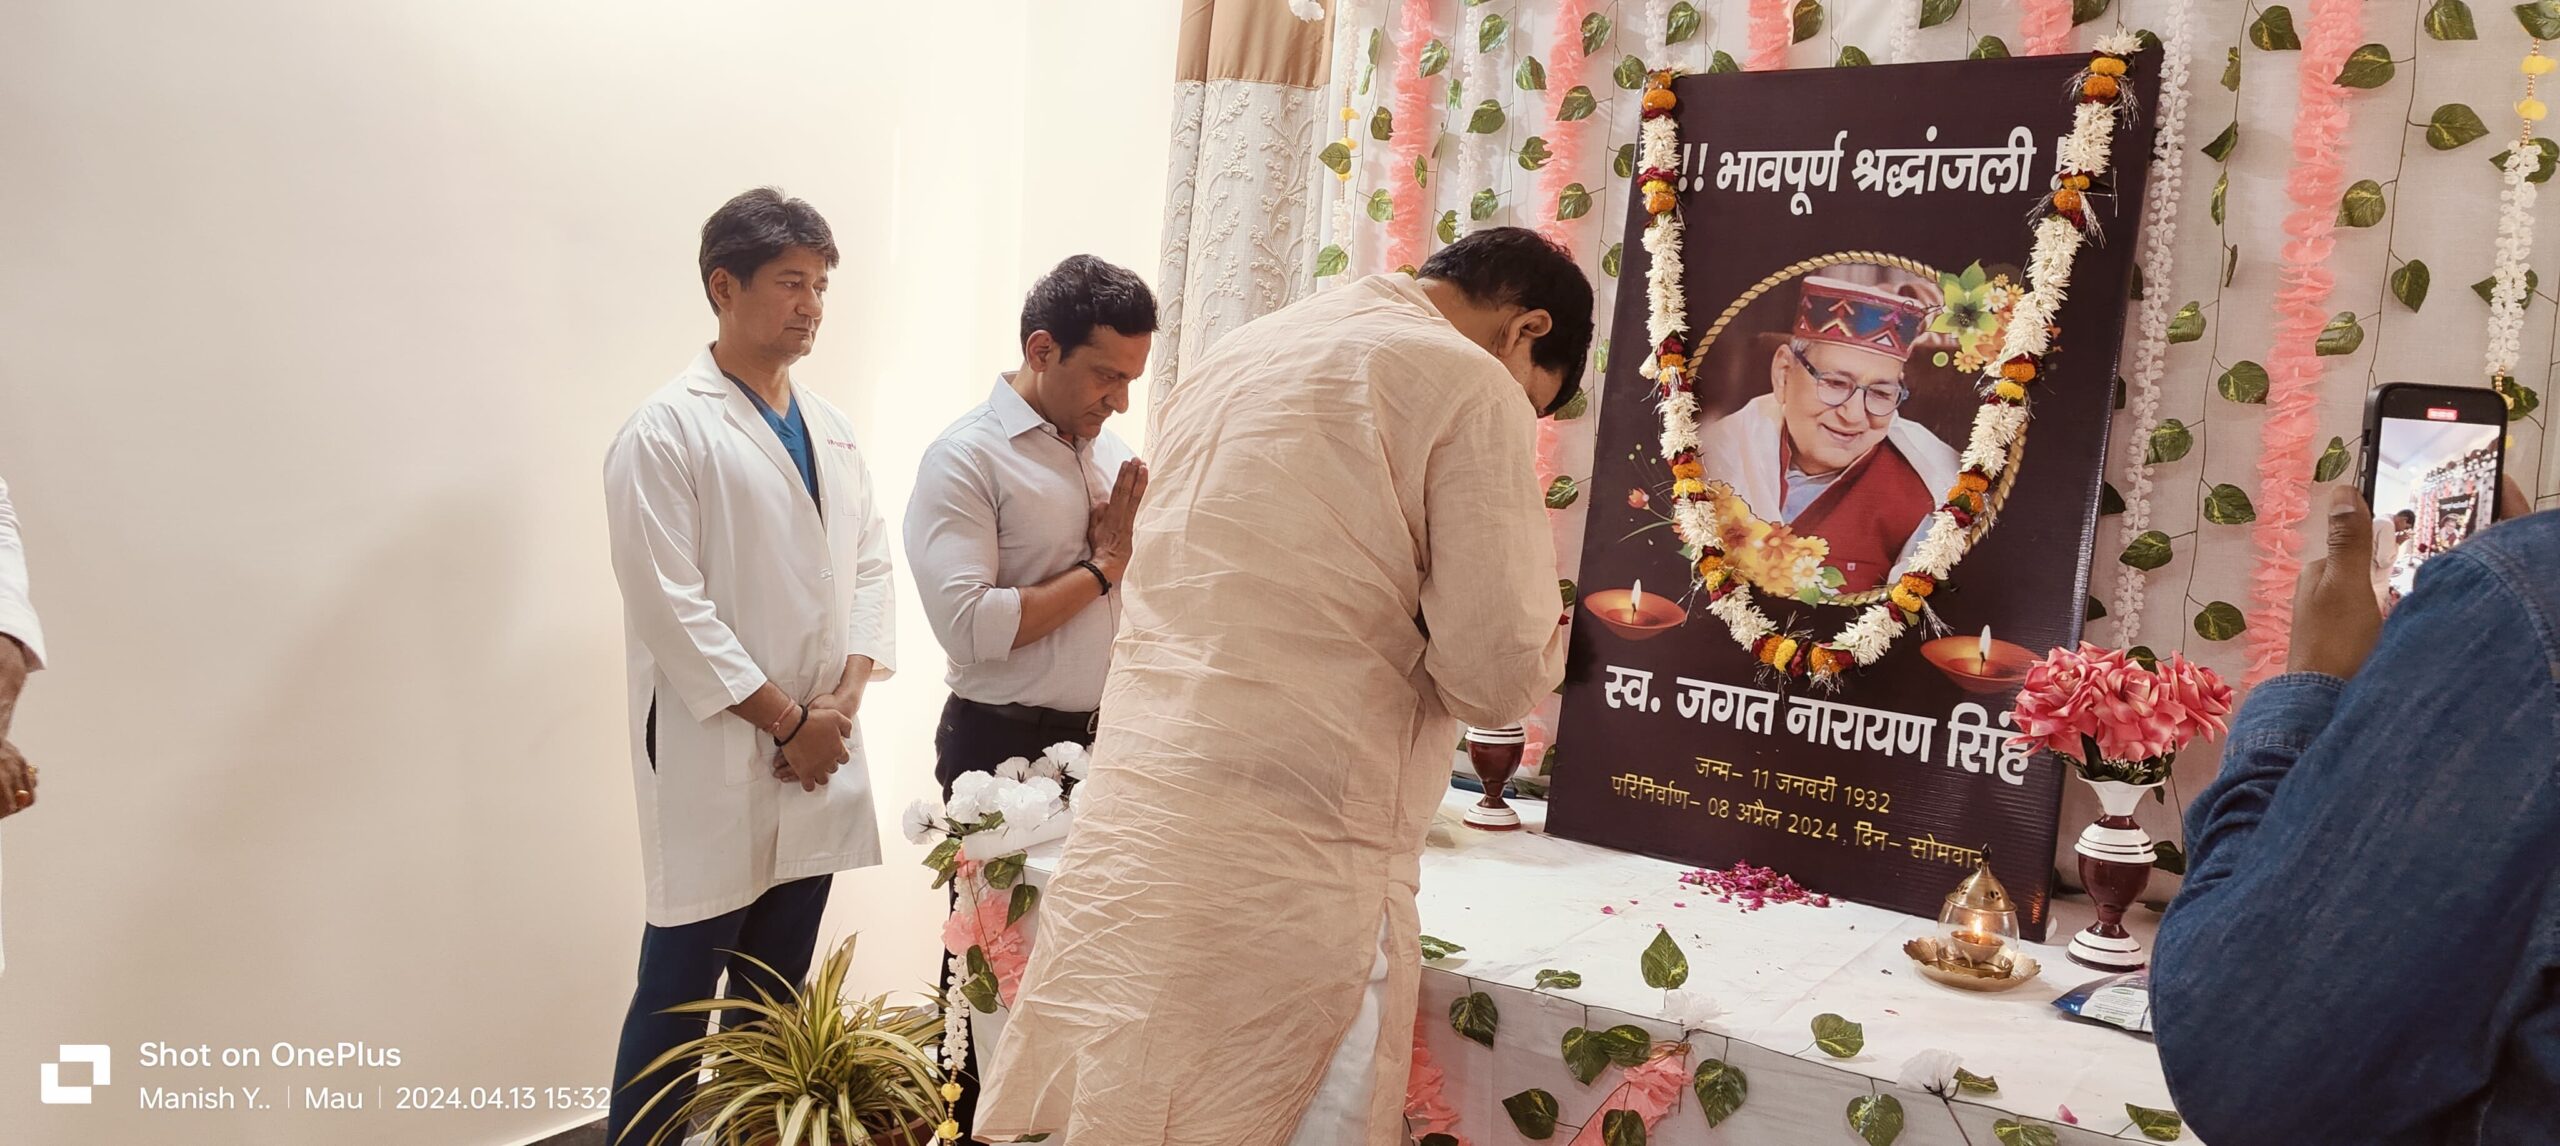 समाजसेवी के निधन पर कैबिनेट मंत्री ने जताई संवेदना-डॉ संजय सिंह सहित परिजनों से मिलकर बांटा दुःख